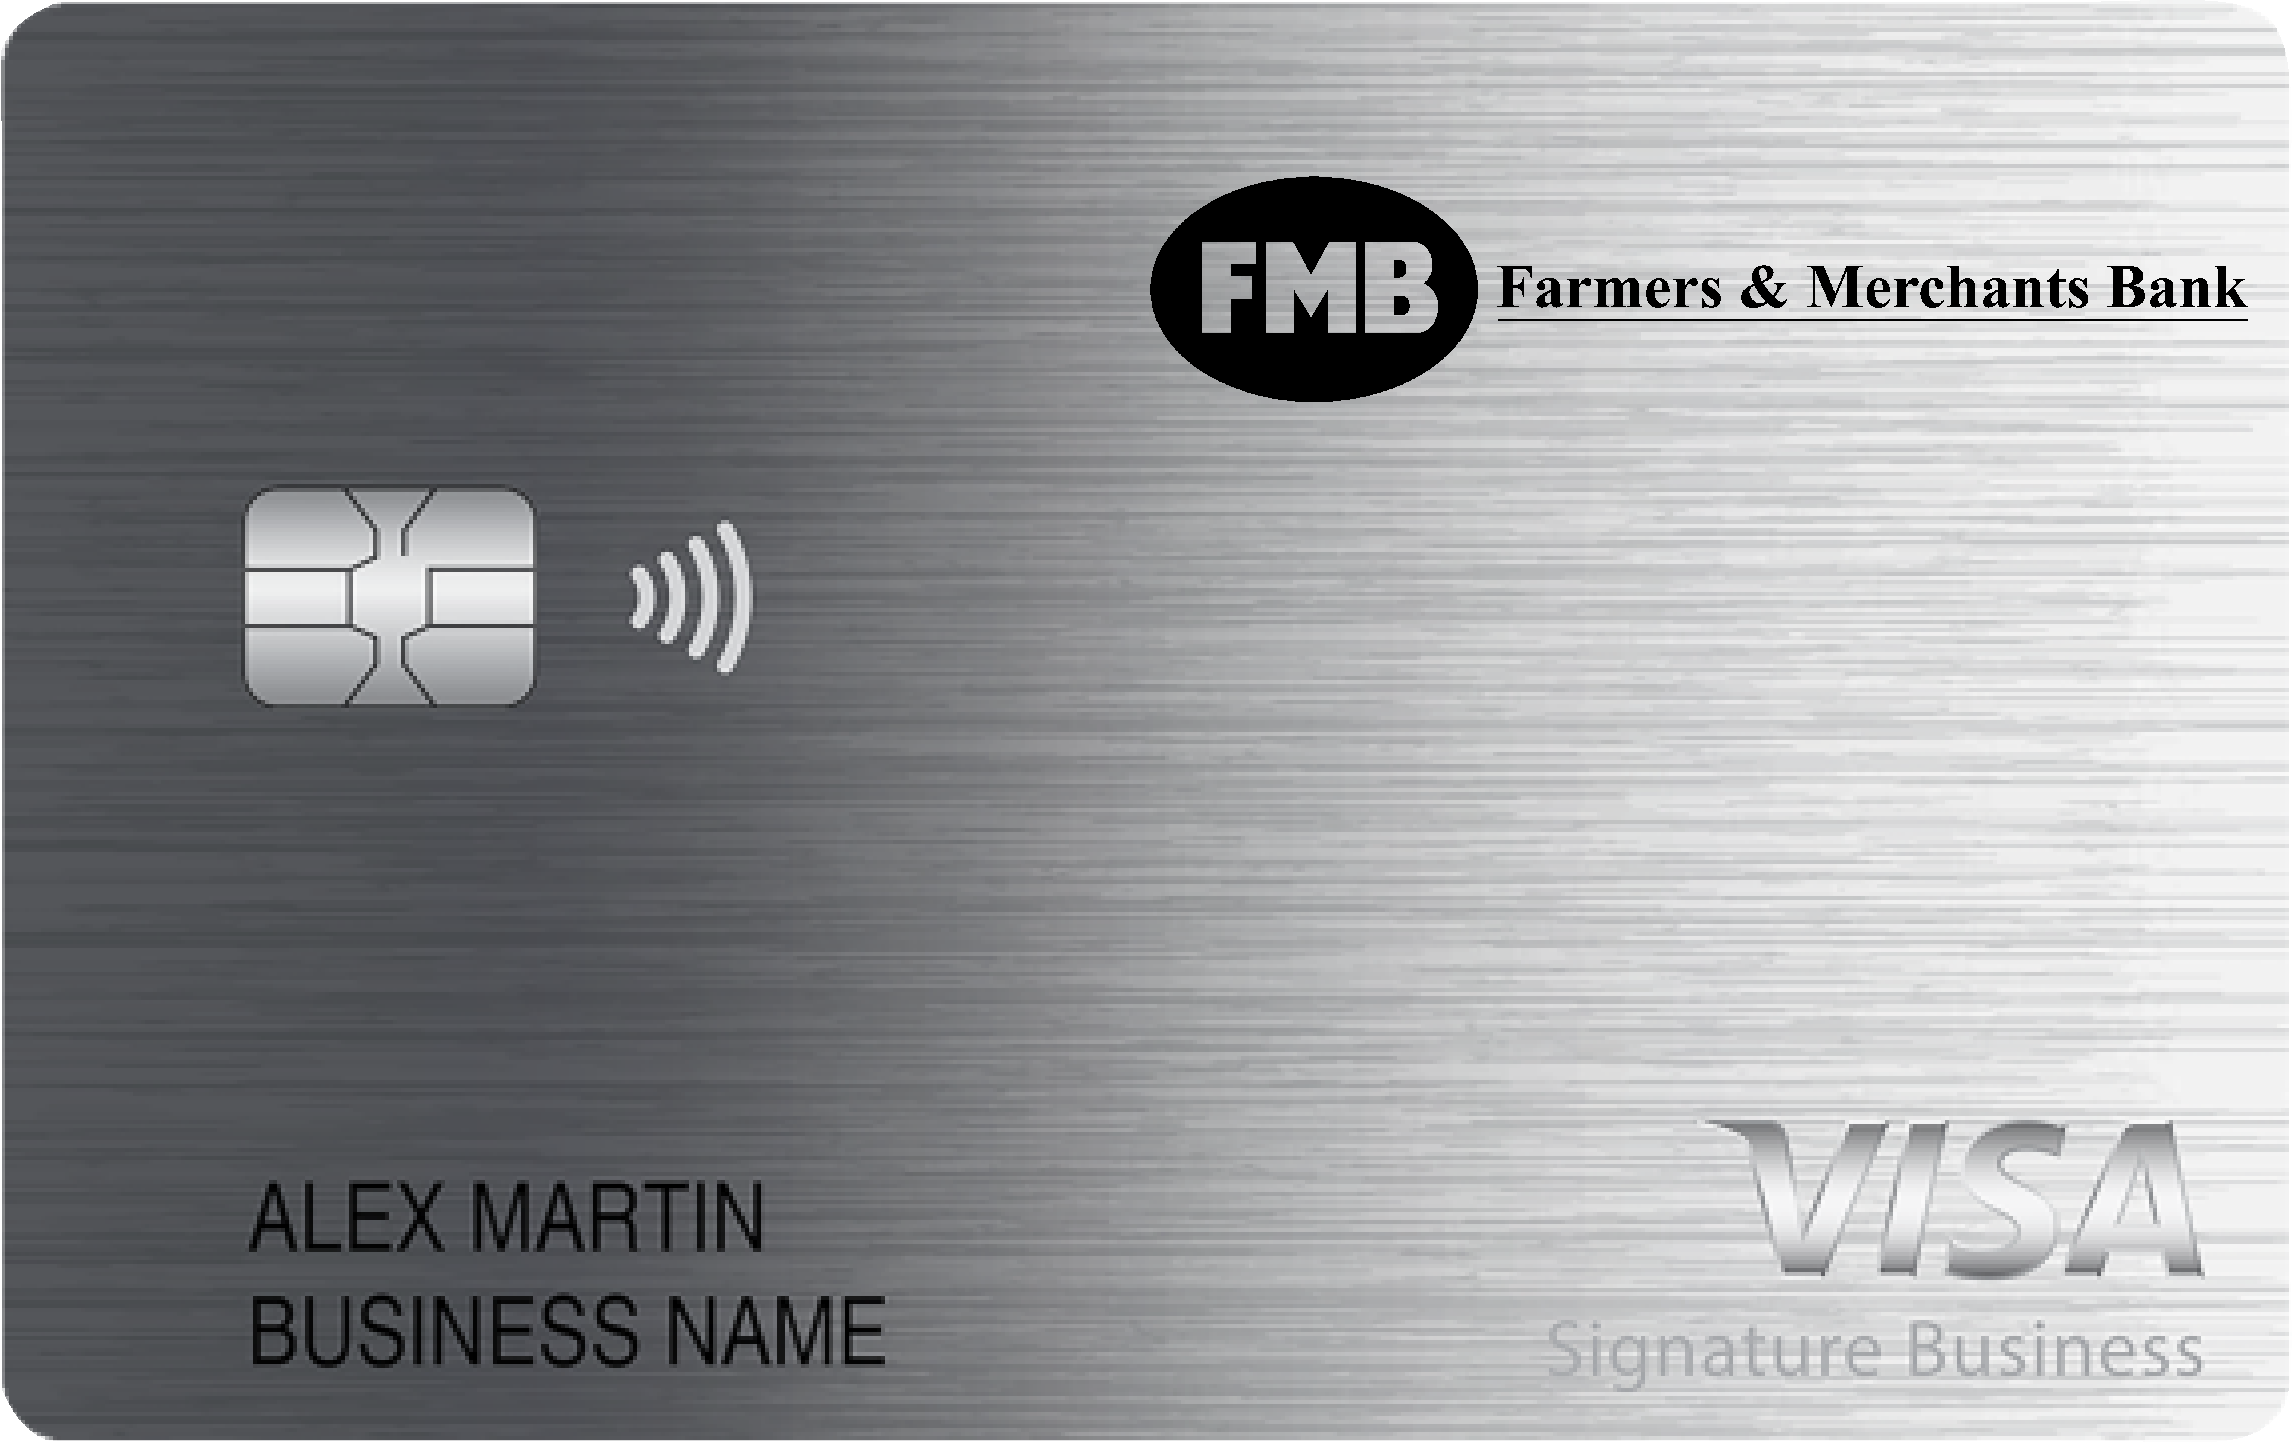 Farmers & Merchants Bank Smart Business Rewards Card